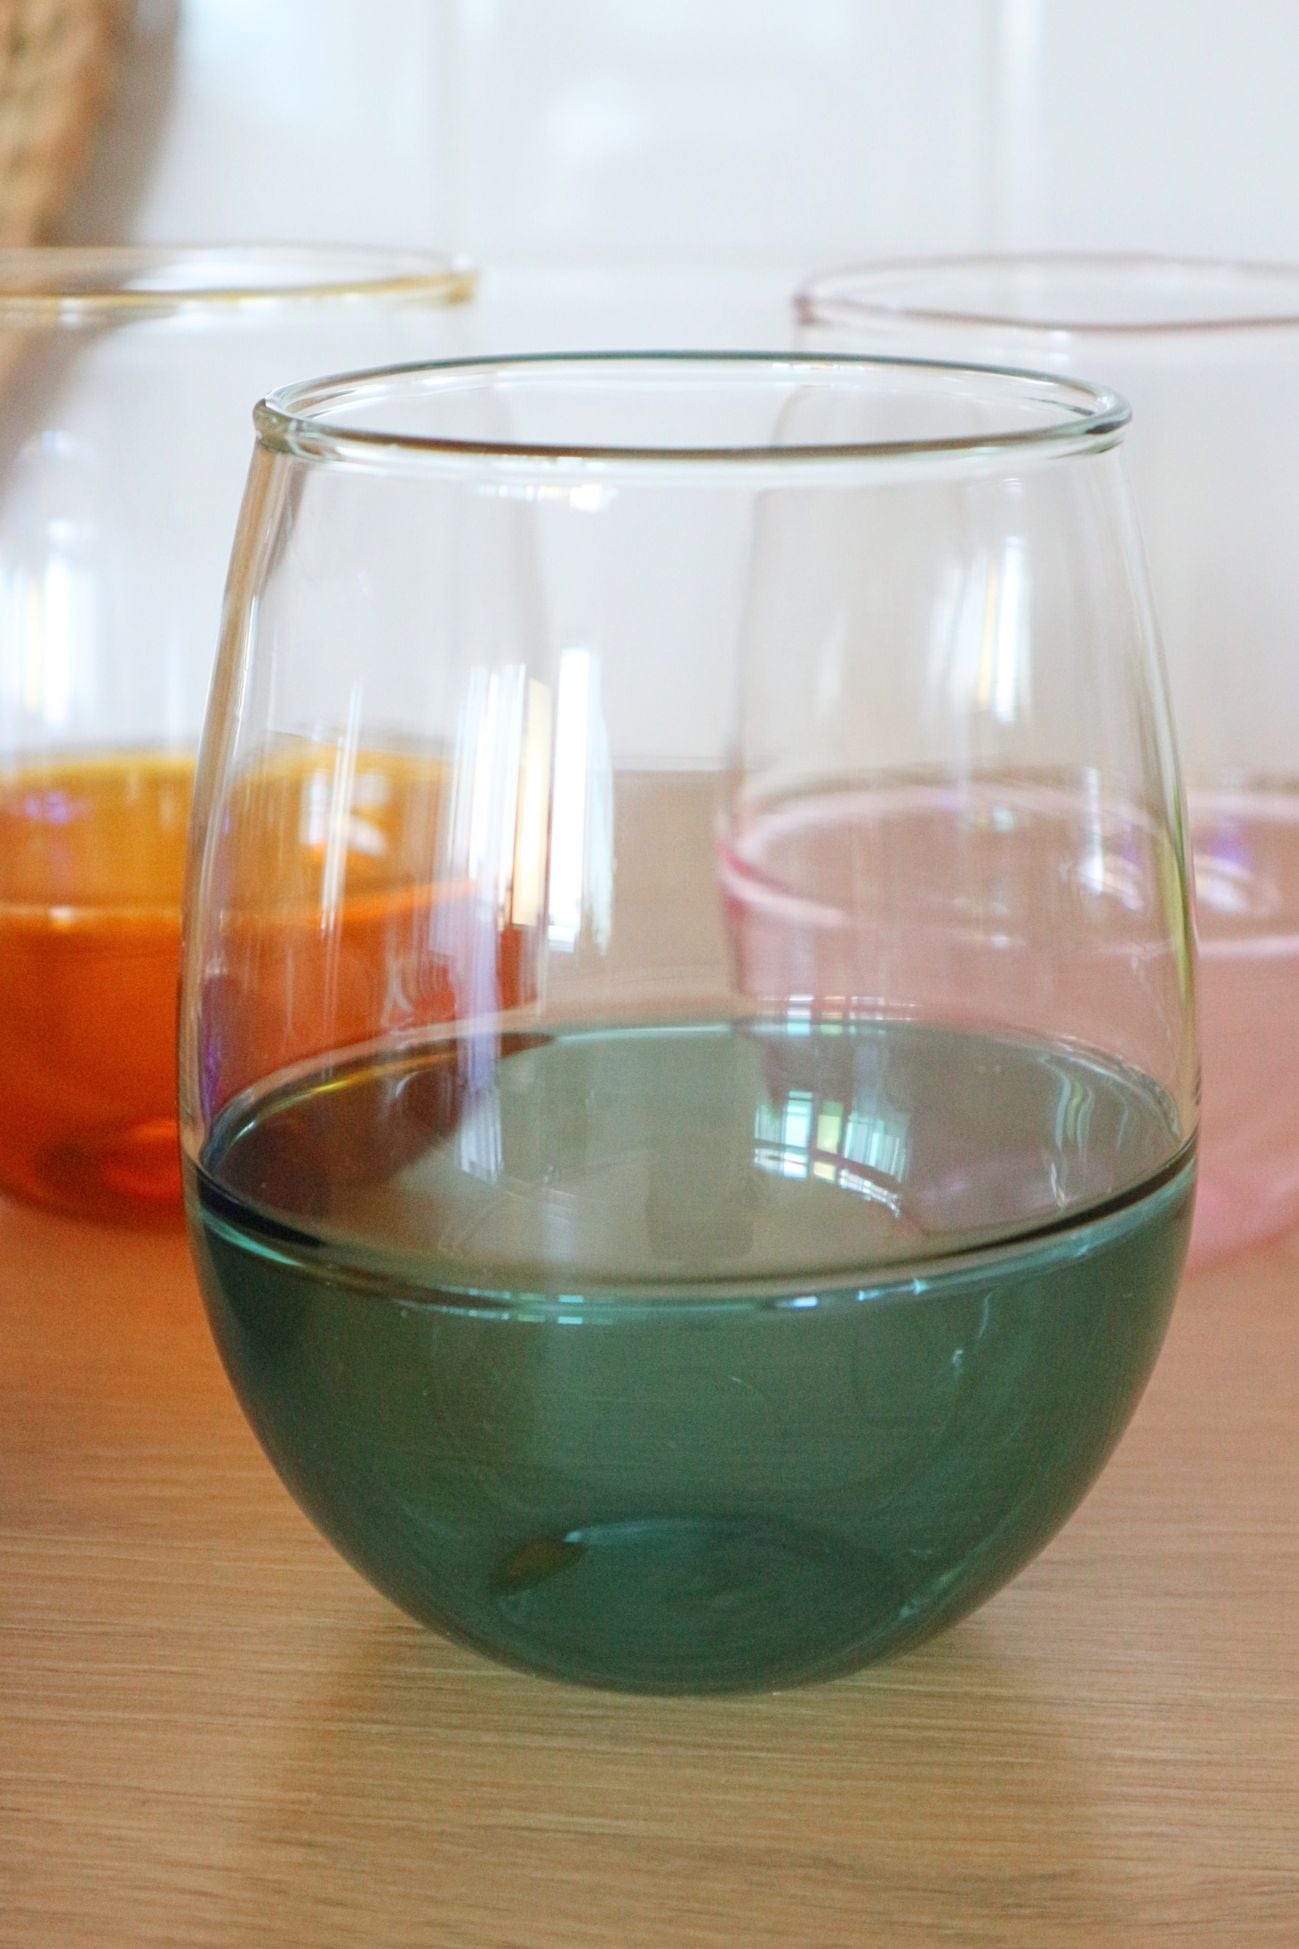 Item International Pop Pop - Set di 4 bicchieri colorati in vetro borosilicato | Item International